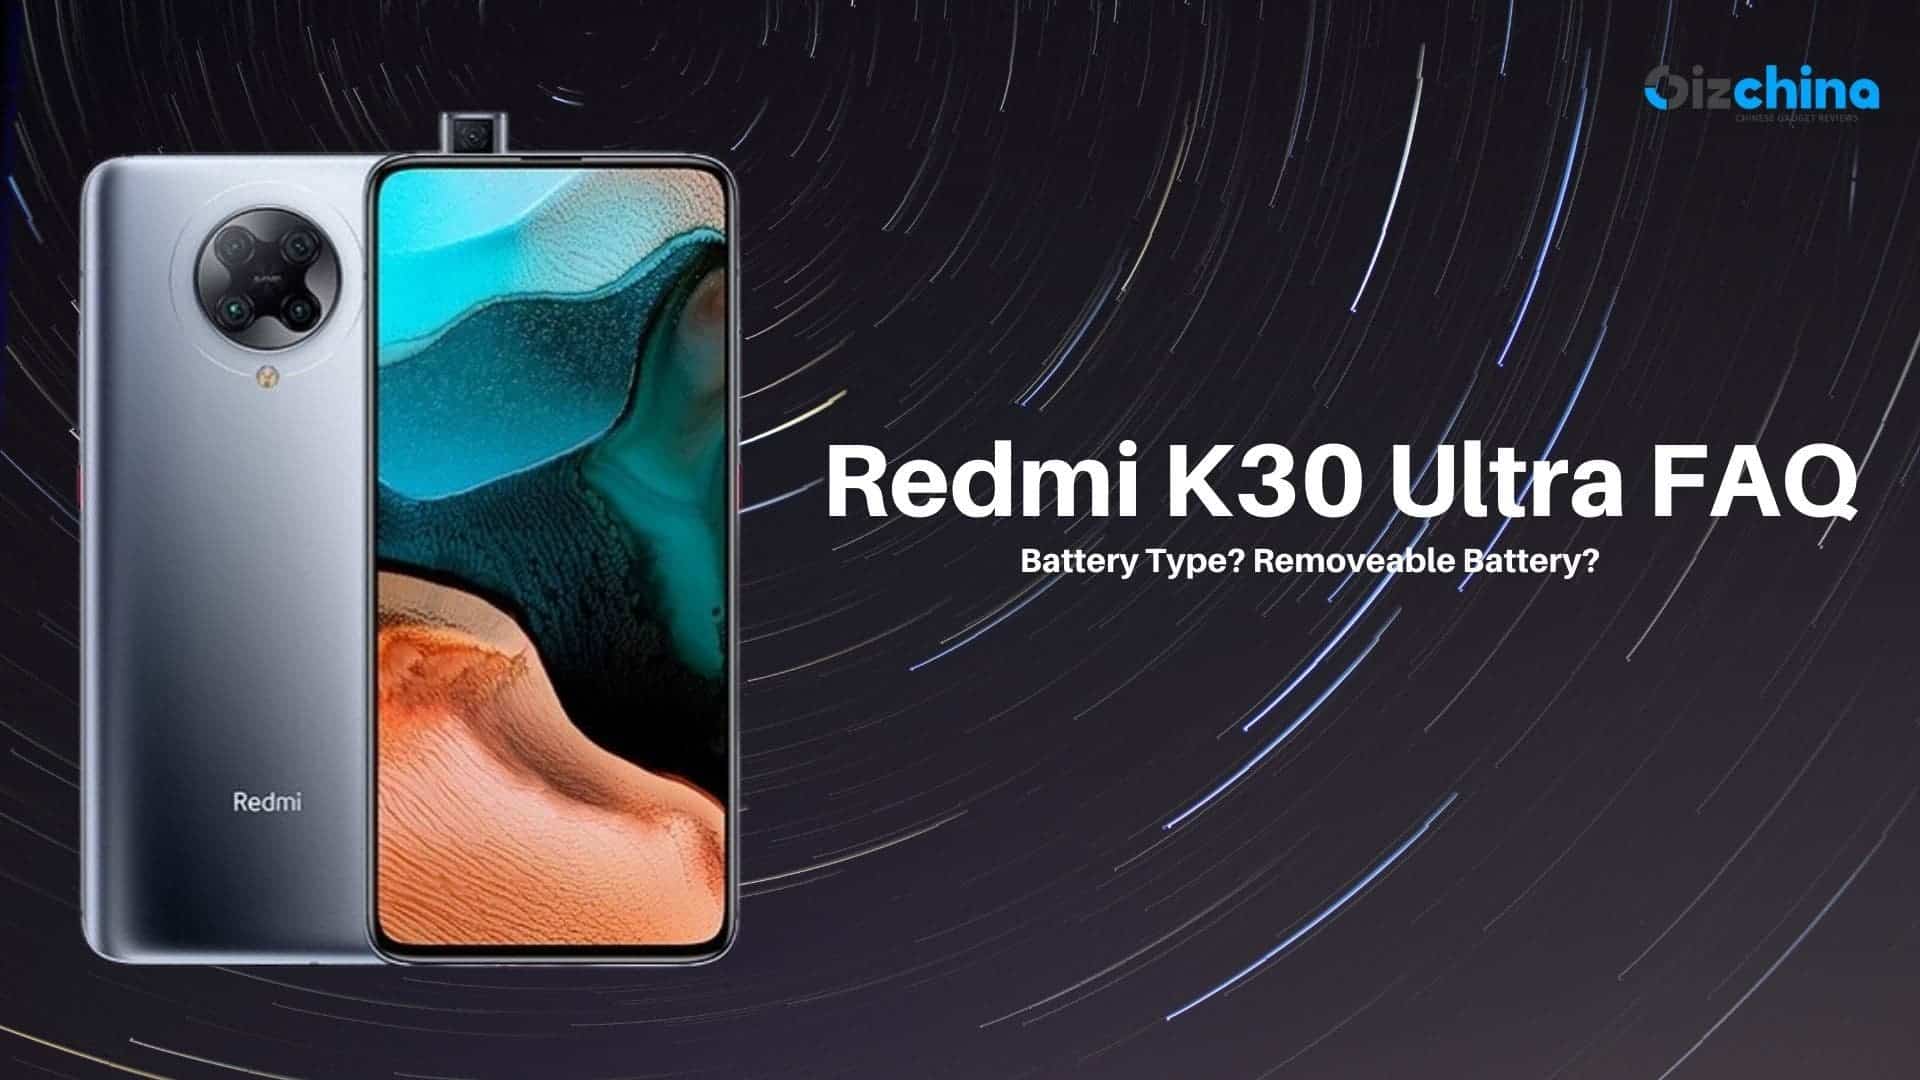 Redmi K30 Ultra FAQ